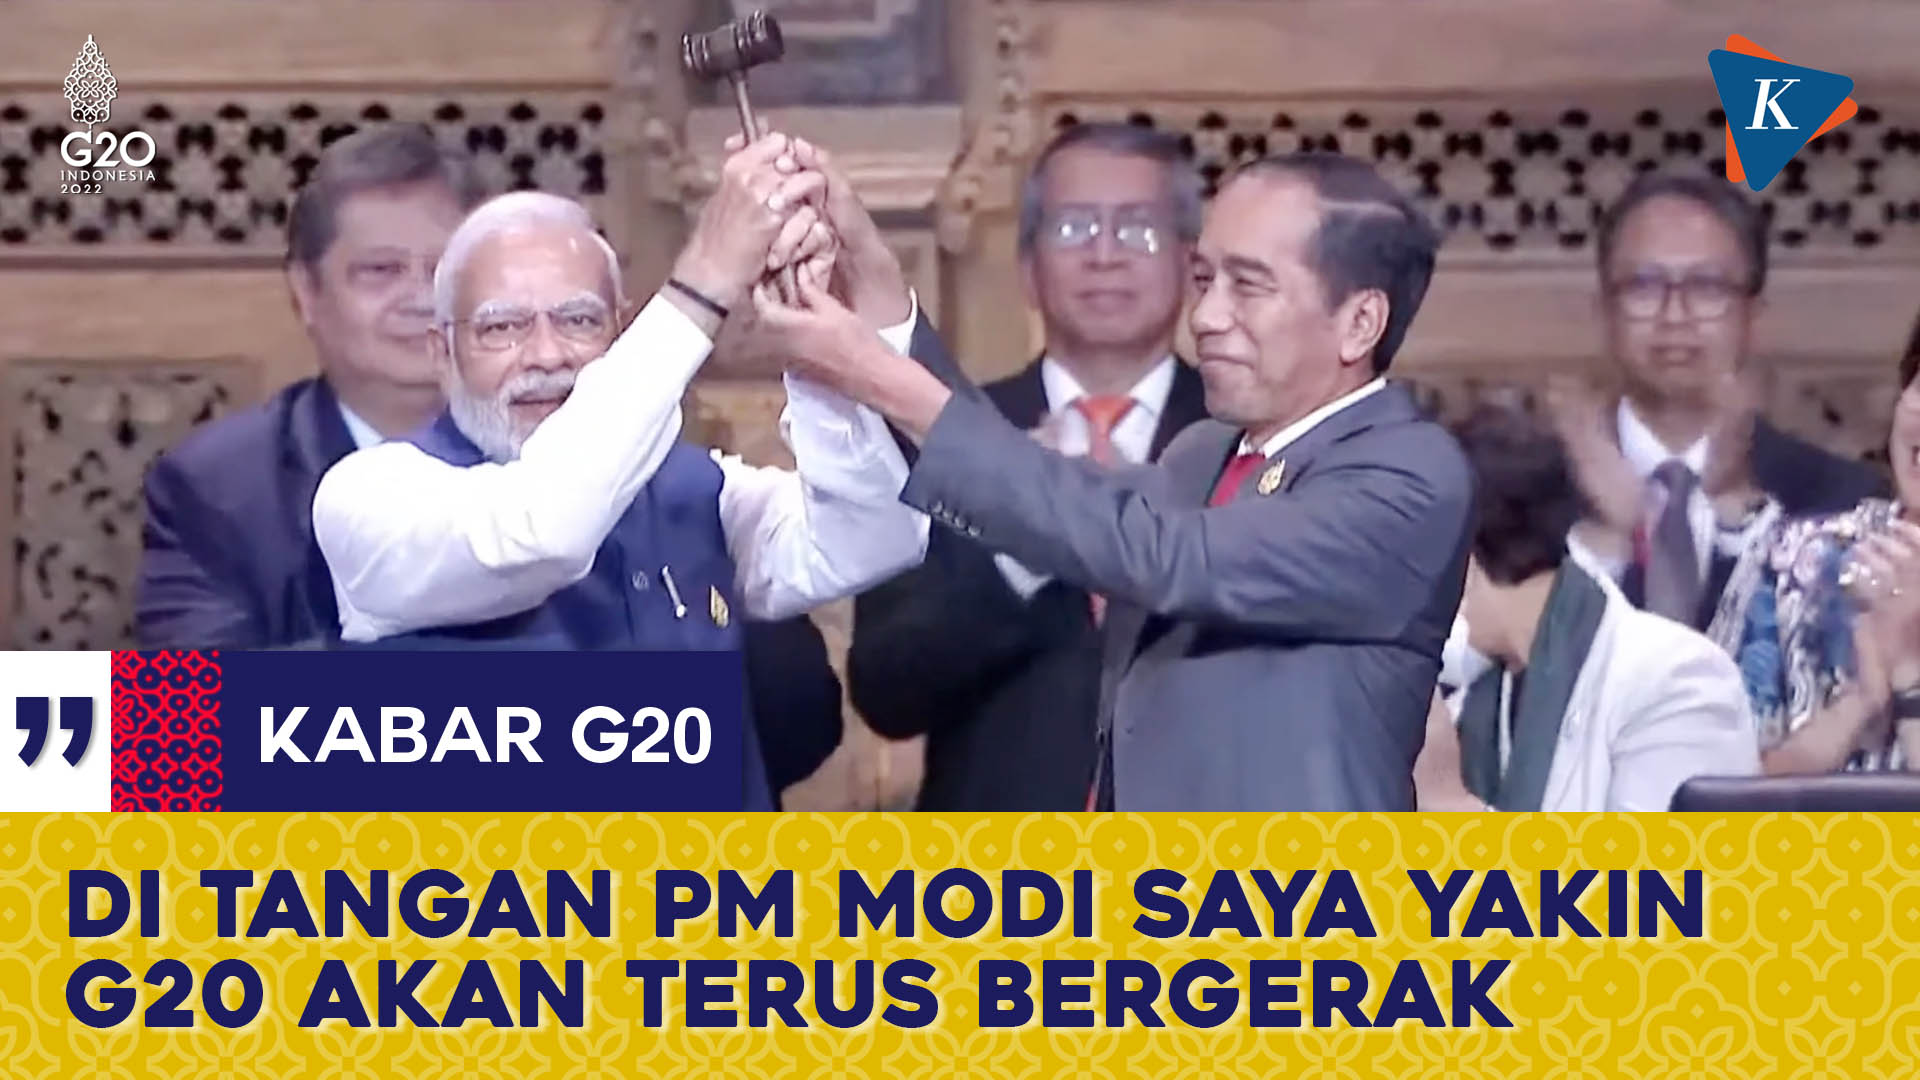 Jokowi Resmi Serahkan Presidensi G20 ke India